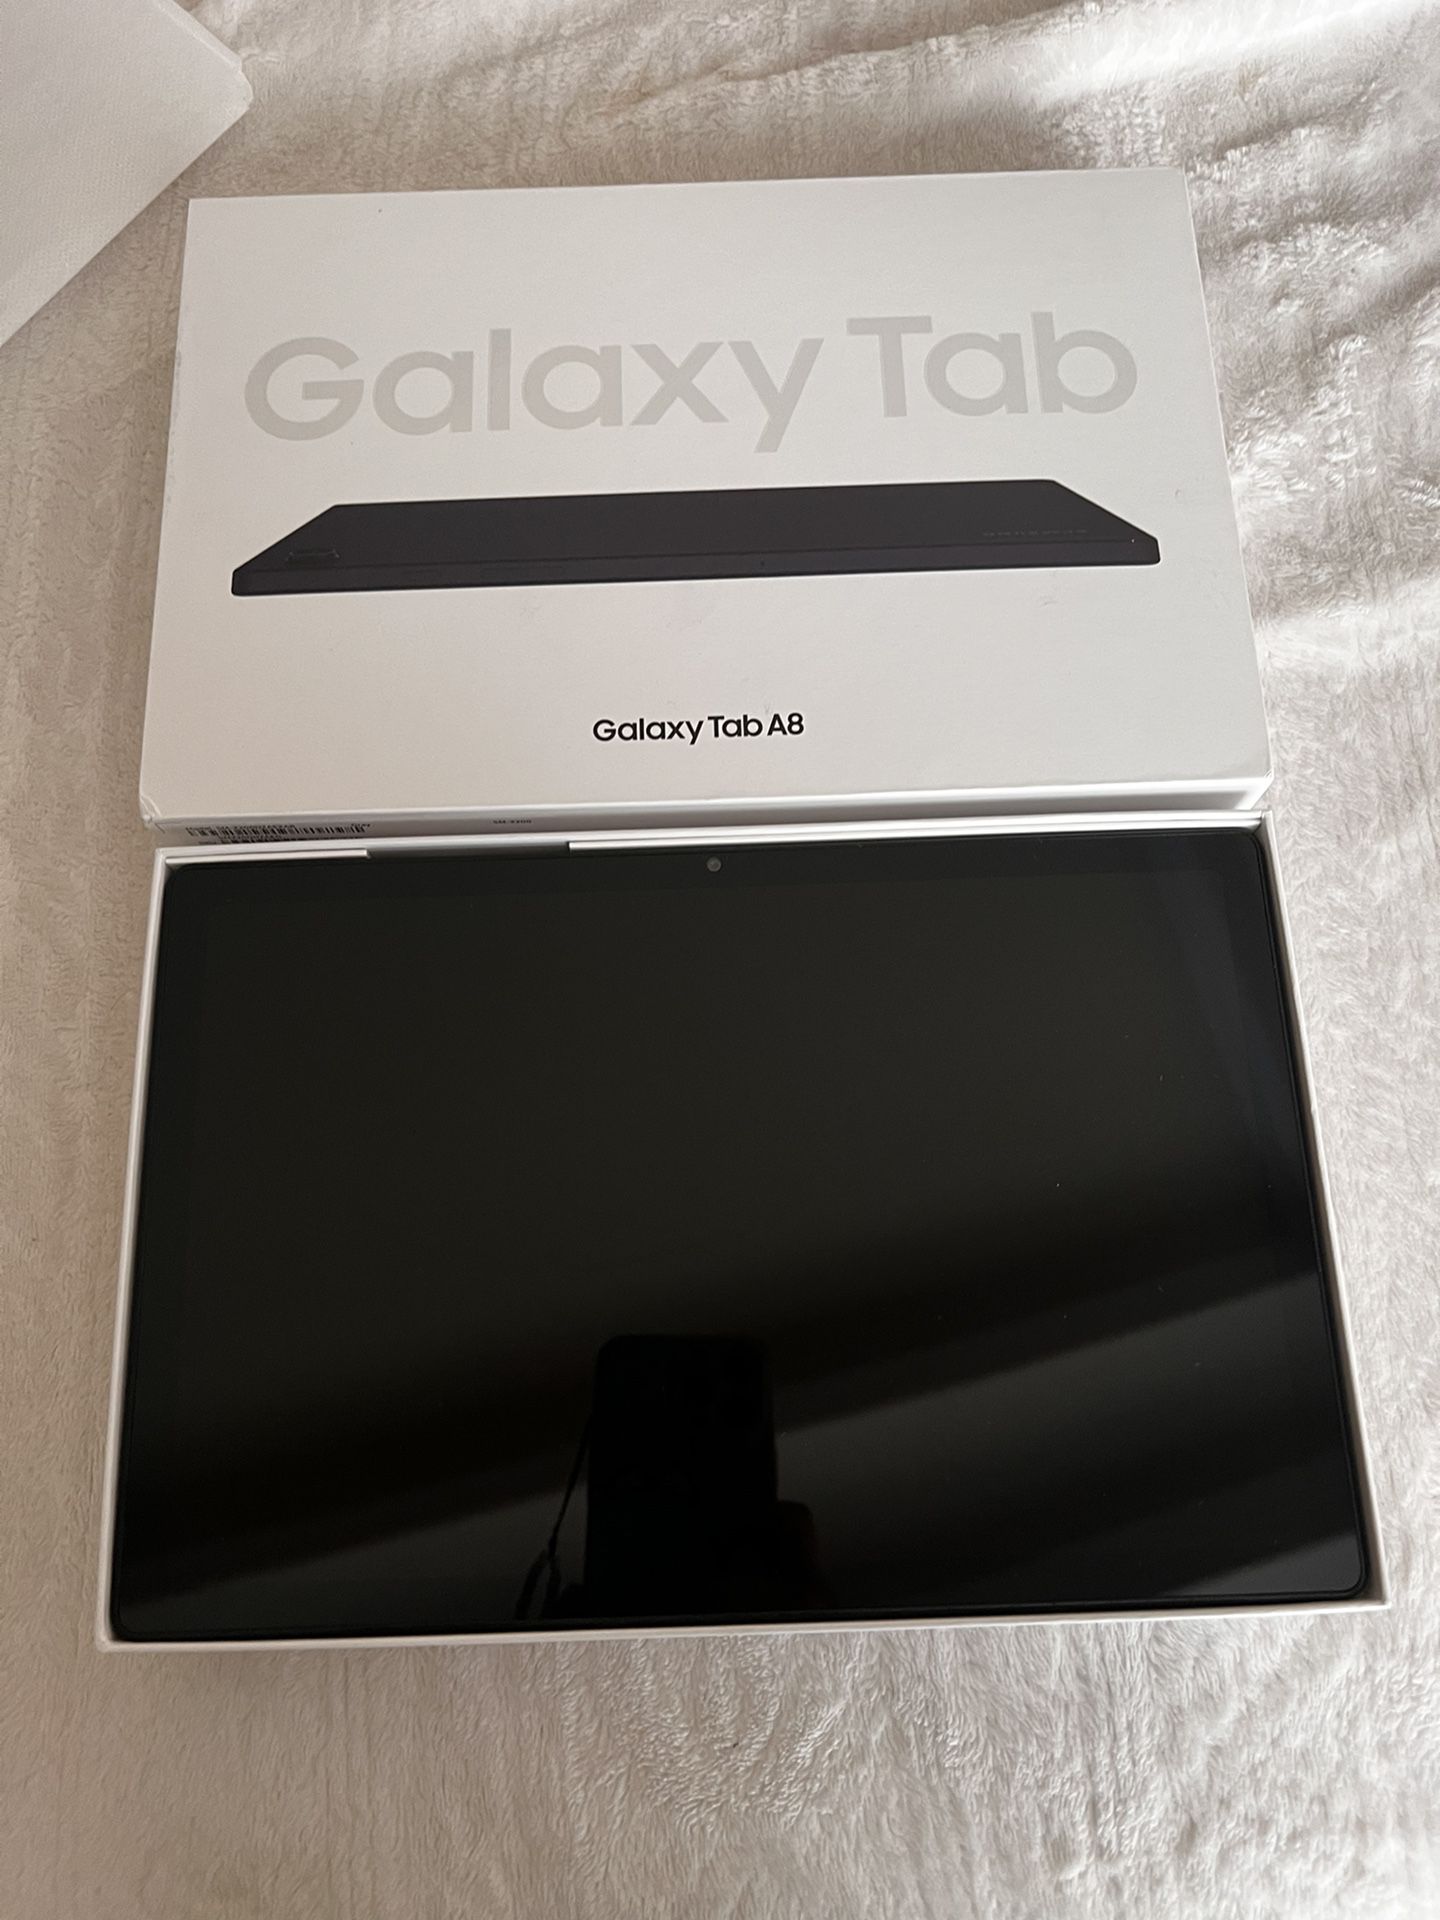 Samsung Galaxy Tablet 